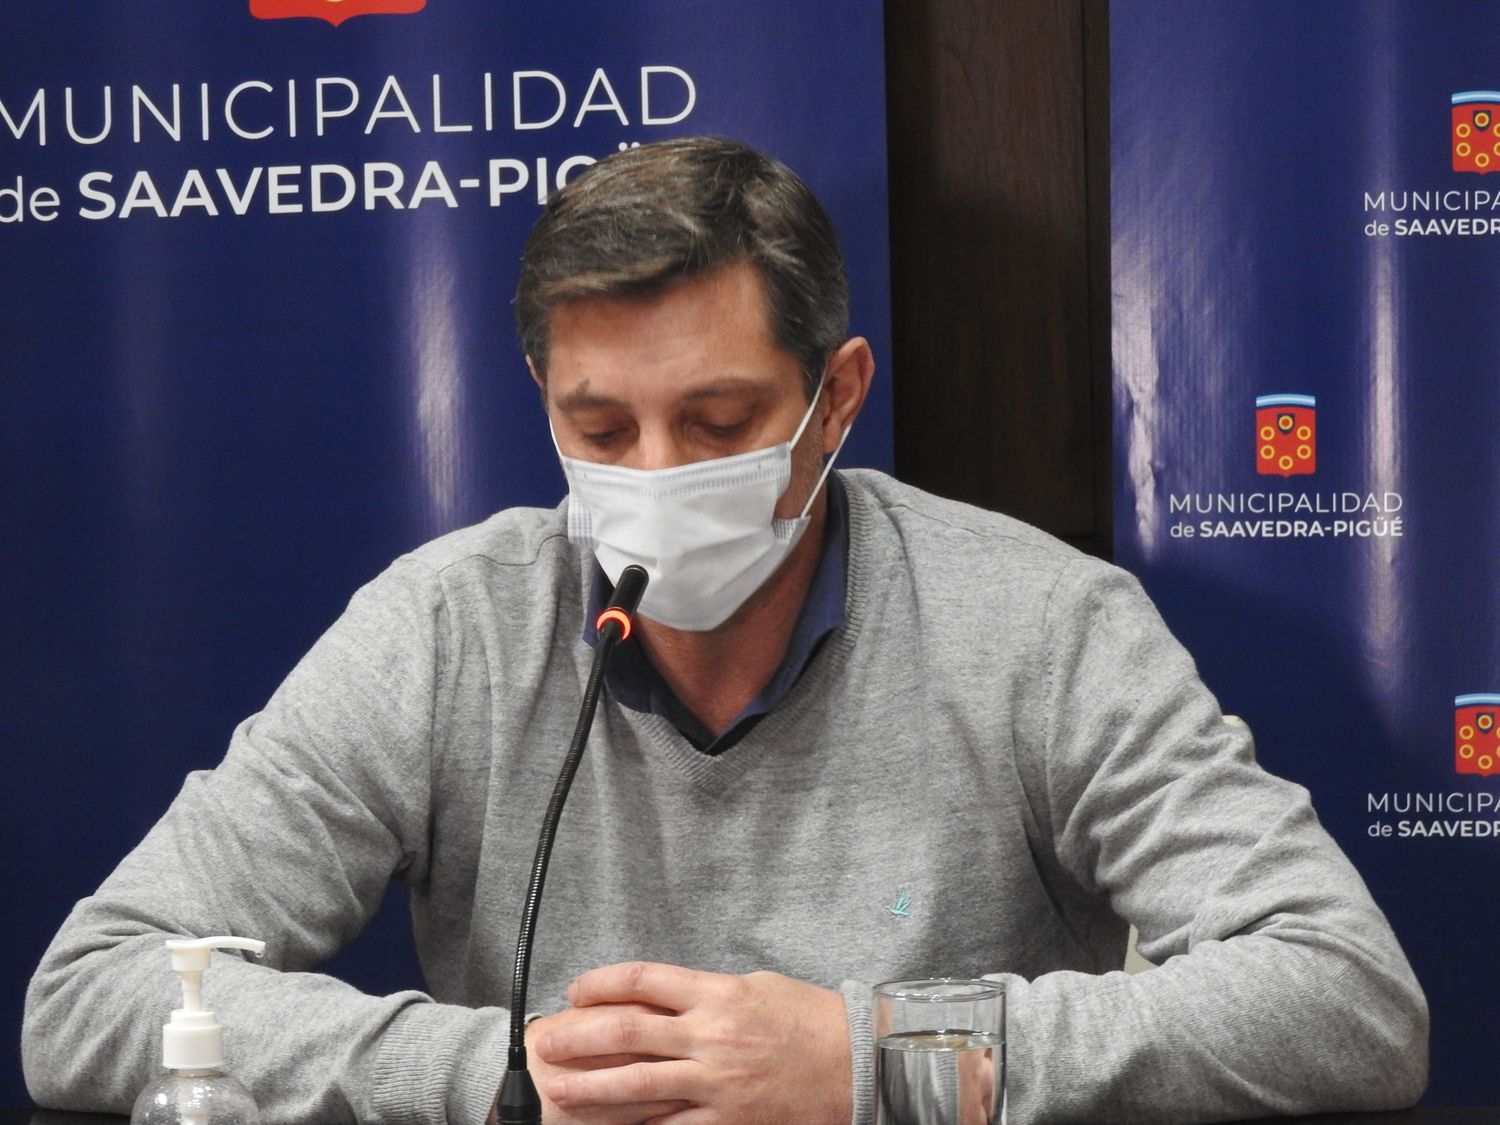 El Intendente de Saavedra confirmó que tiene coronavirus: "Estoy bien, con algunos síntomas normales de este virus"